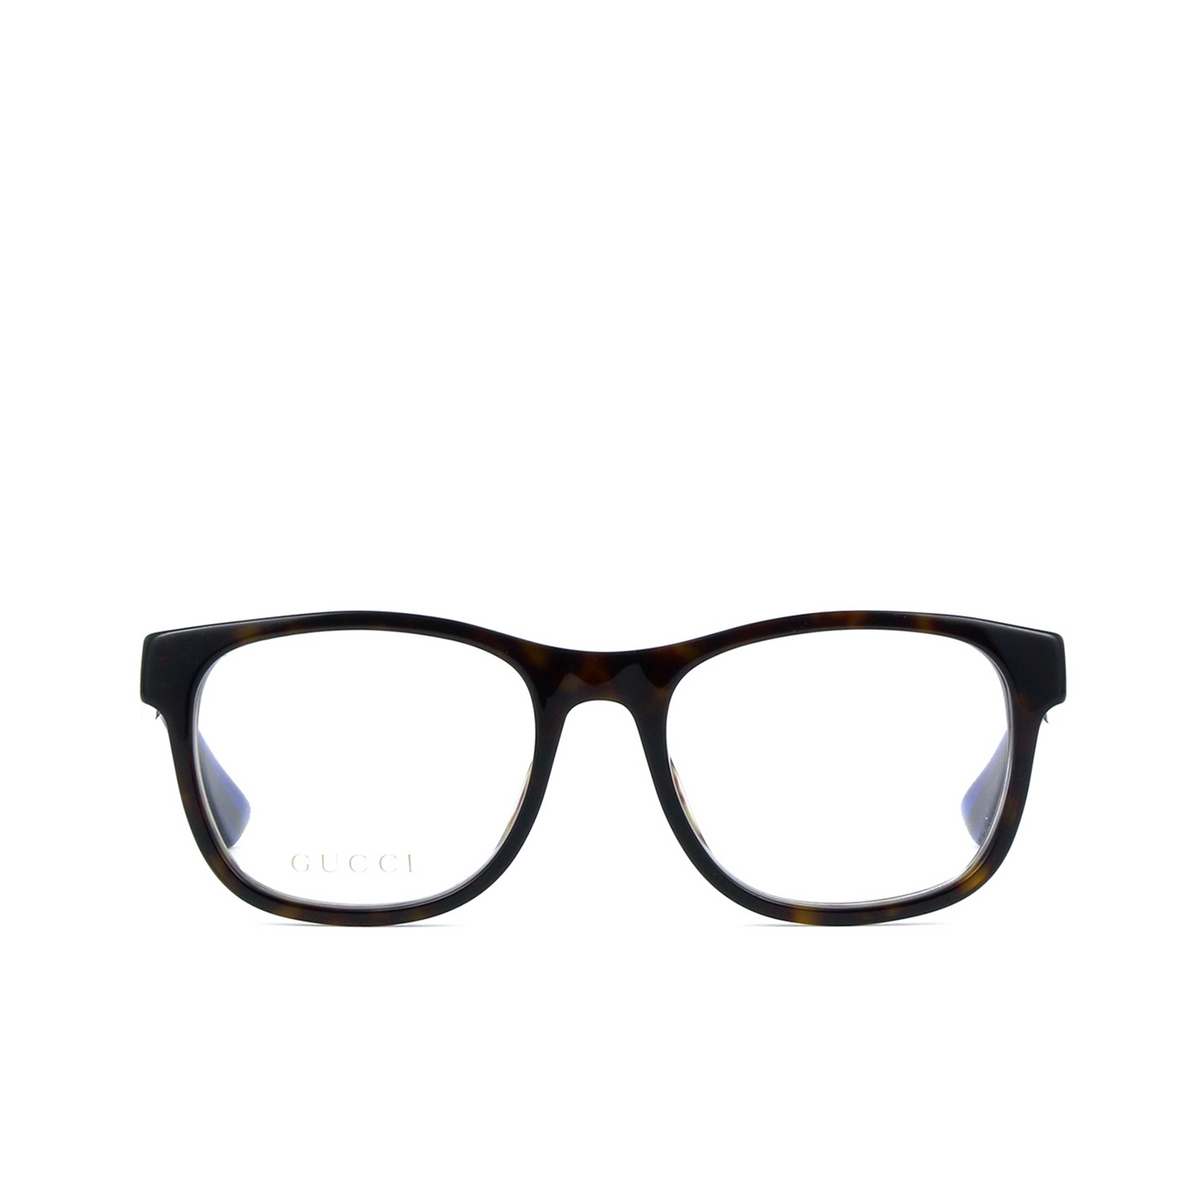 Gucci® Square Eyeglasses: GG0004O color Black 003 - 1/3.